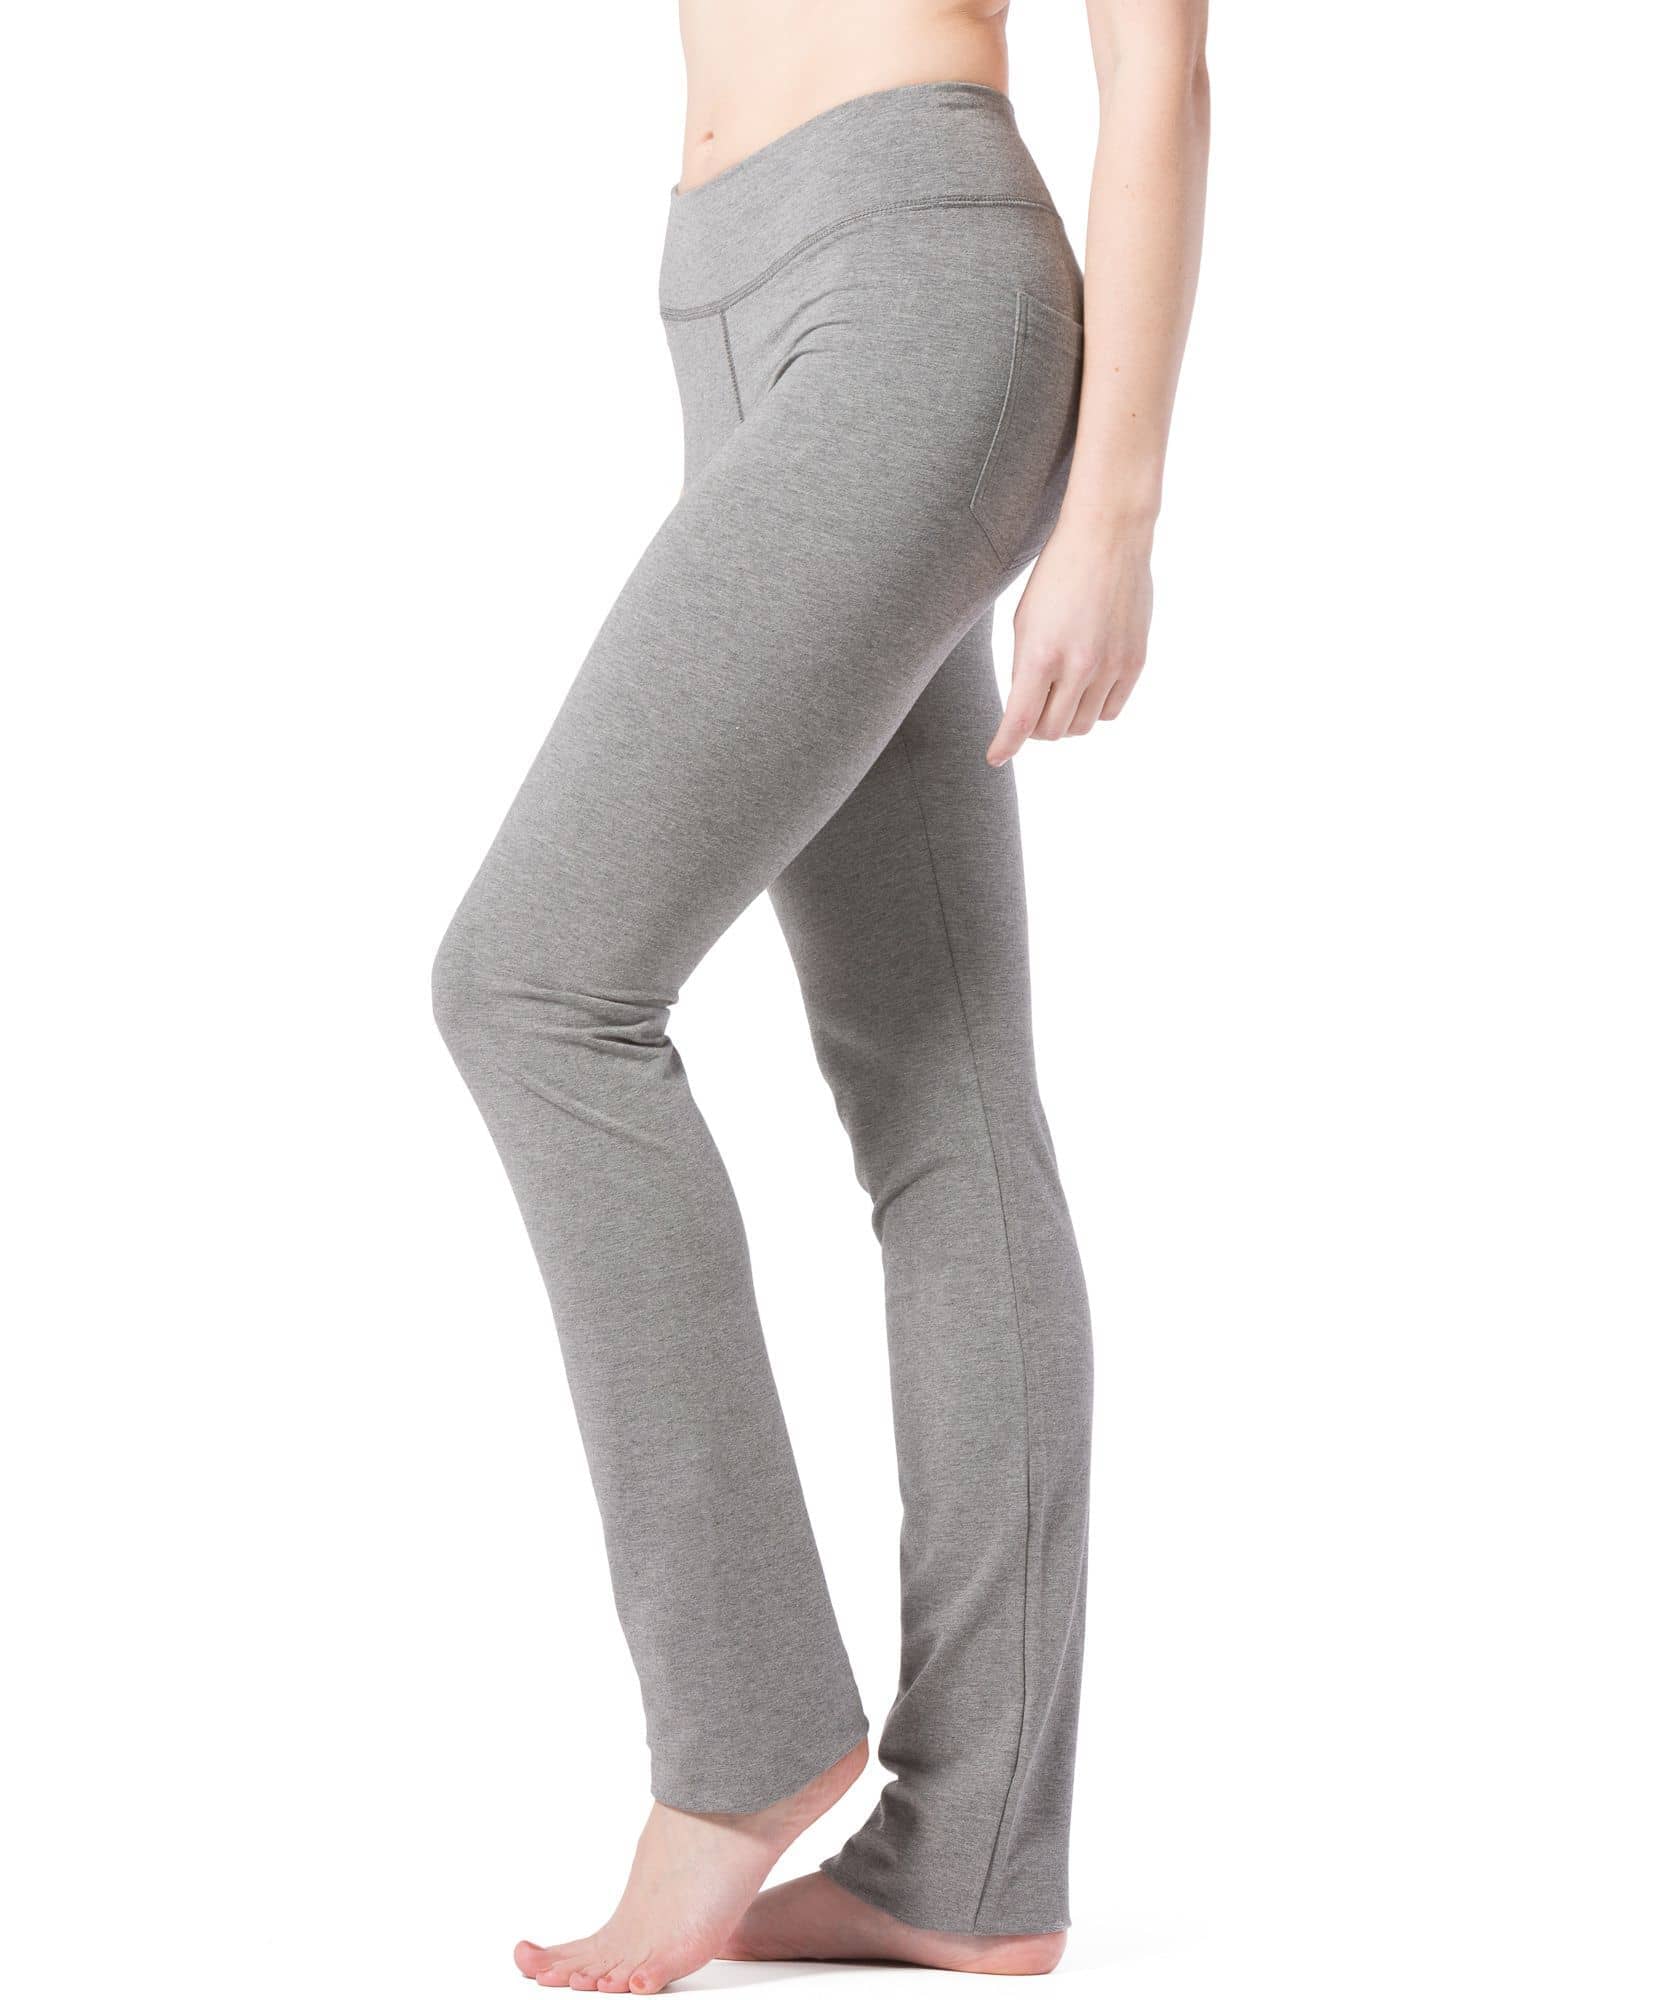  Petite Womens Bootcut Yoga Pants Long Workout Pant,29,Black,Size  S